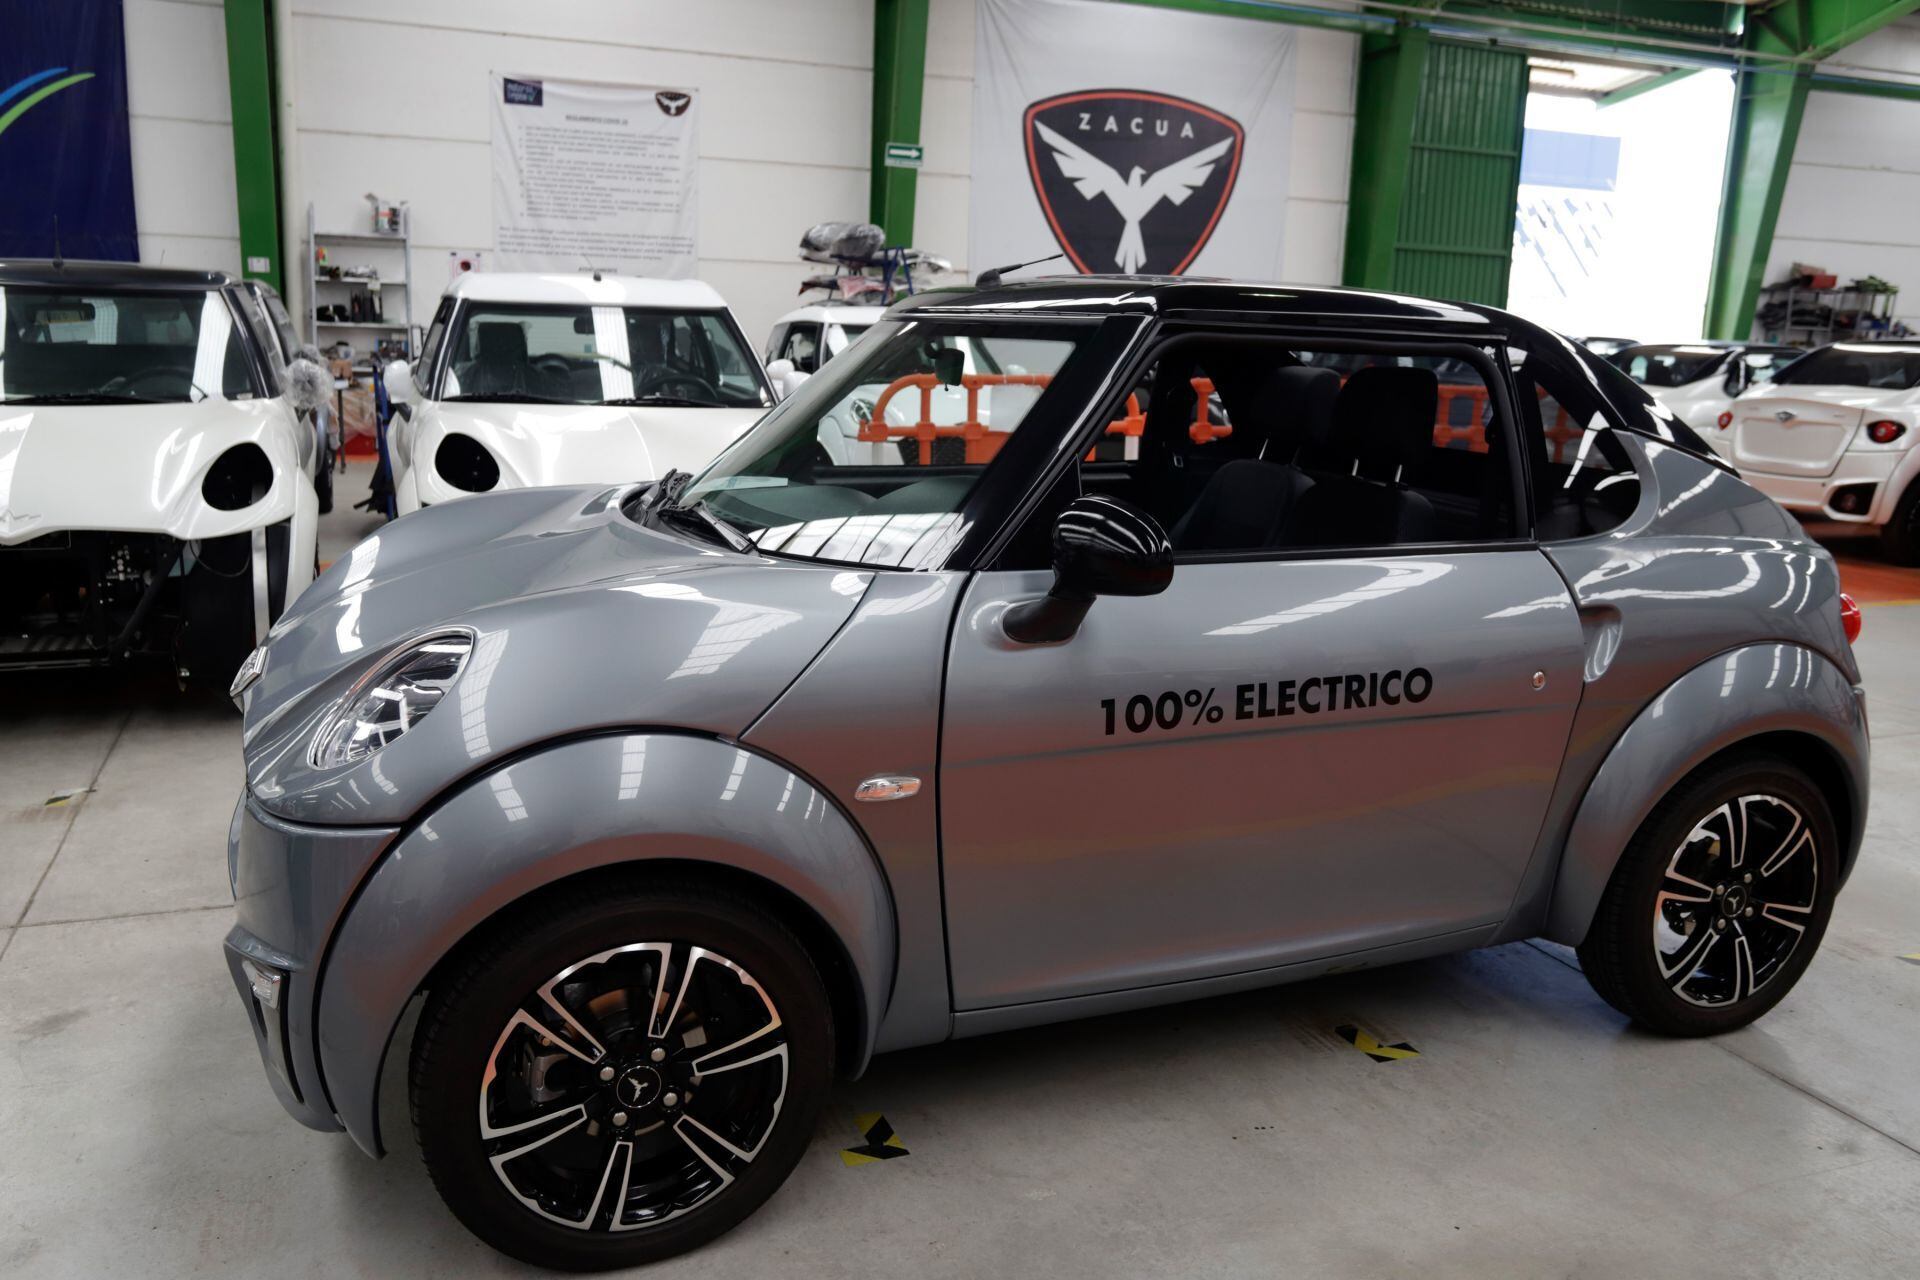 La fábrica se ensamblaje del auto eléctrico mexicano Zacua se ubica en la capital poblana.